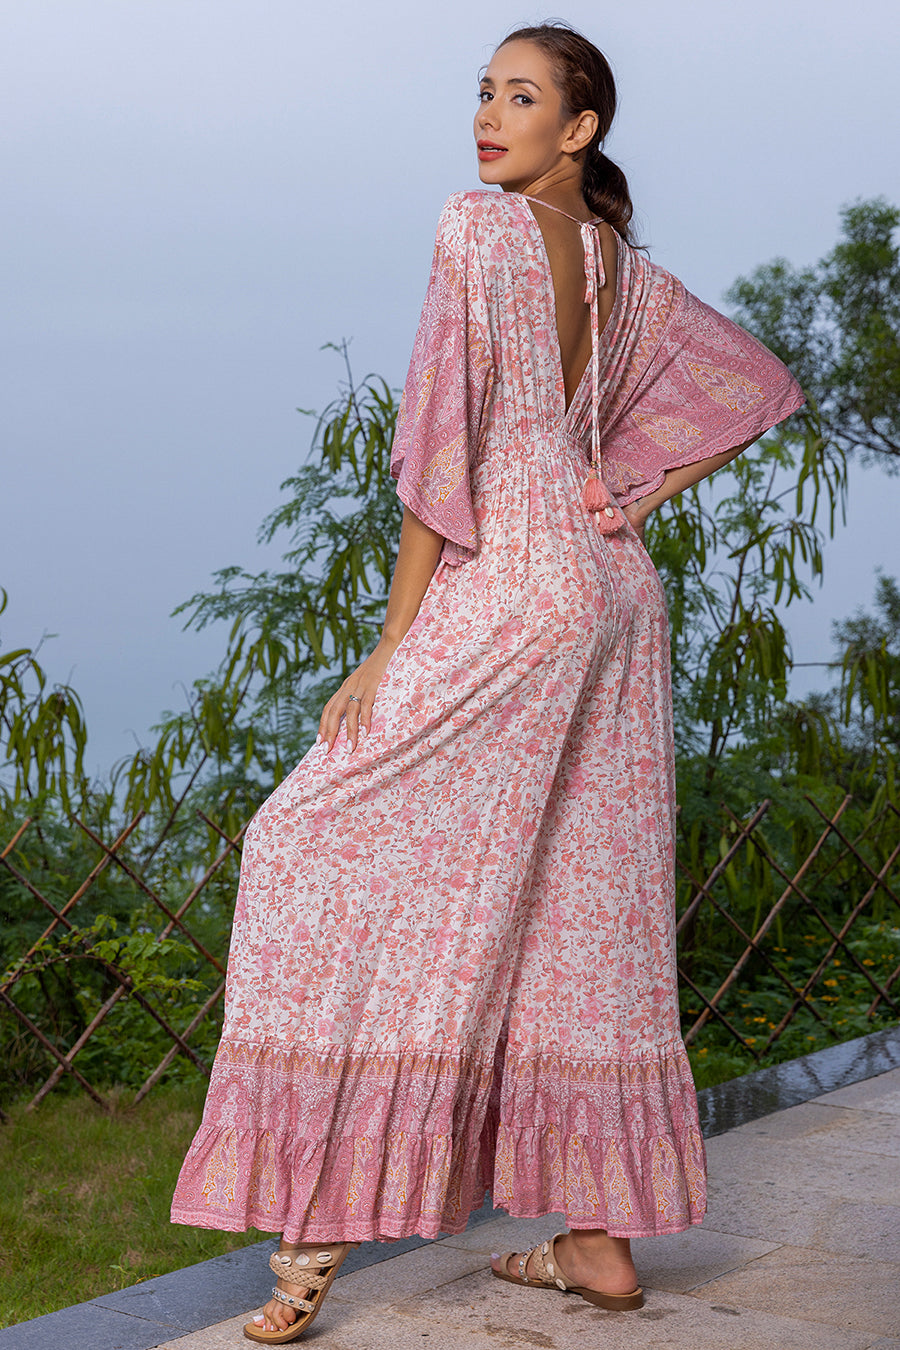 Γυναικεία ολόσωμη φόρμα Monalisa, Ροζ 3